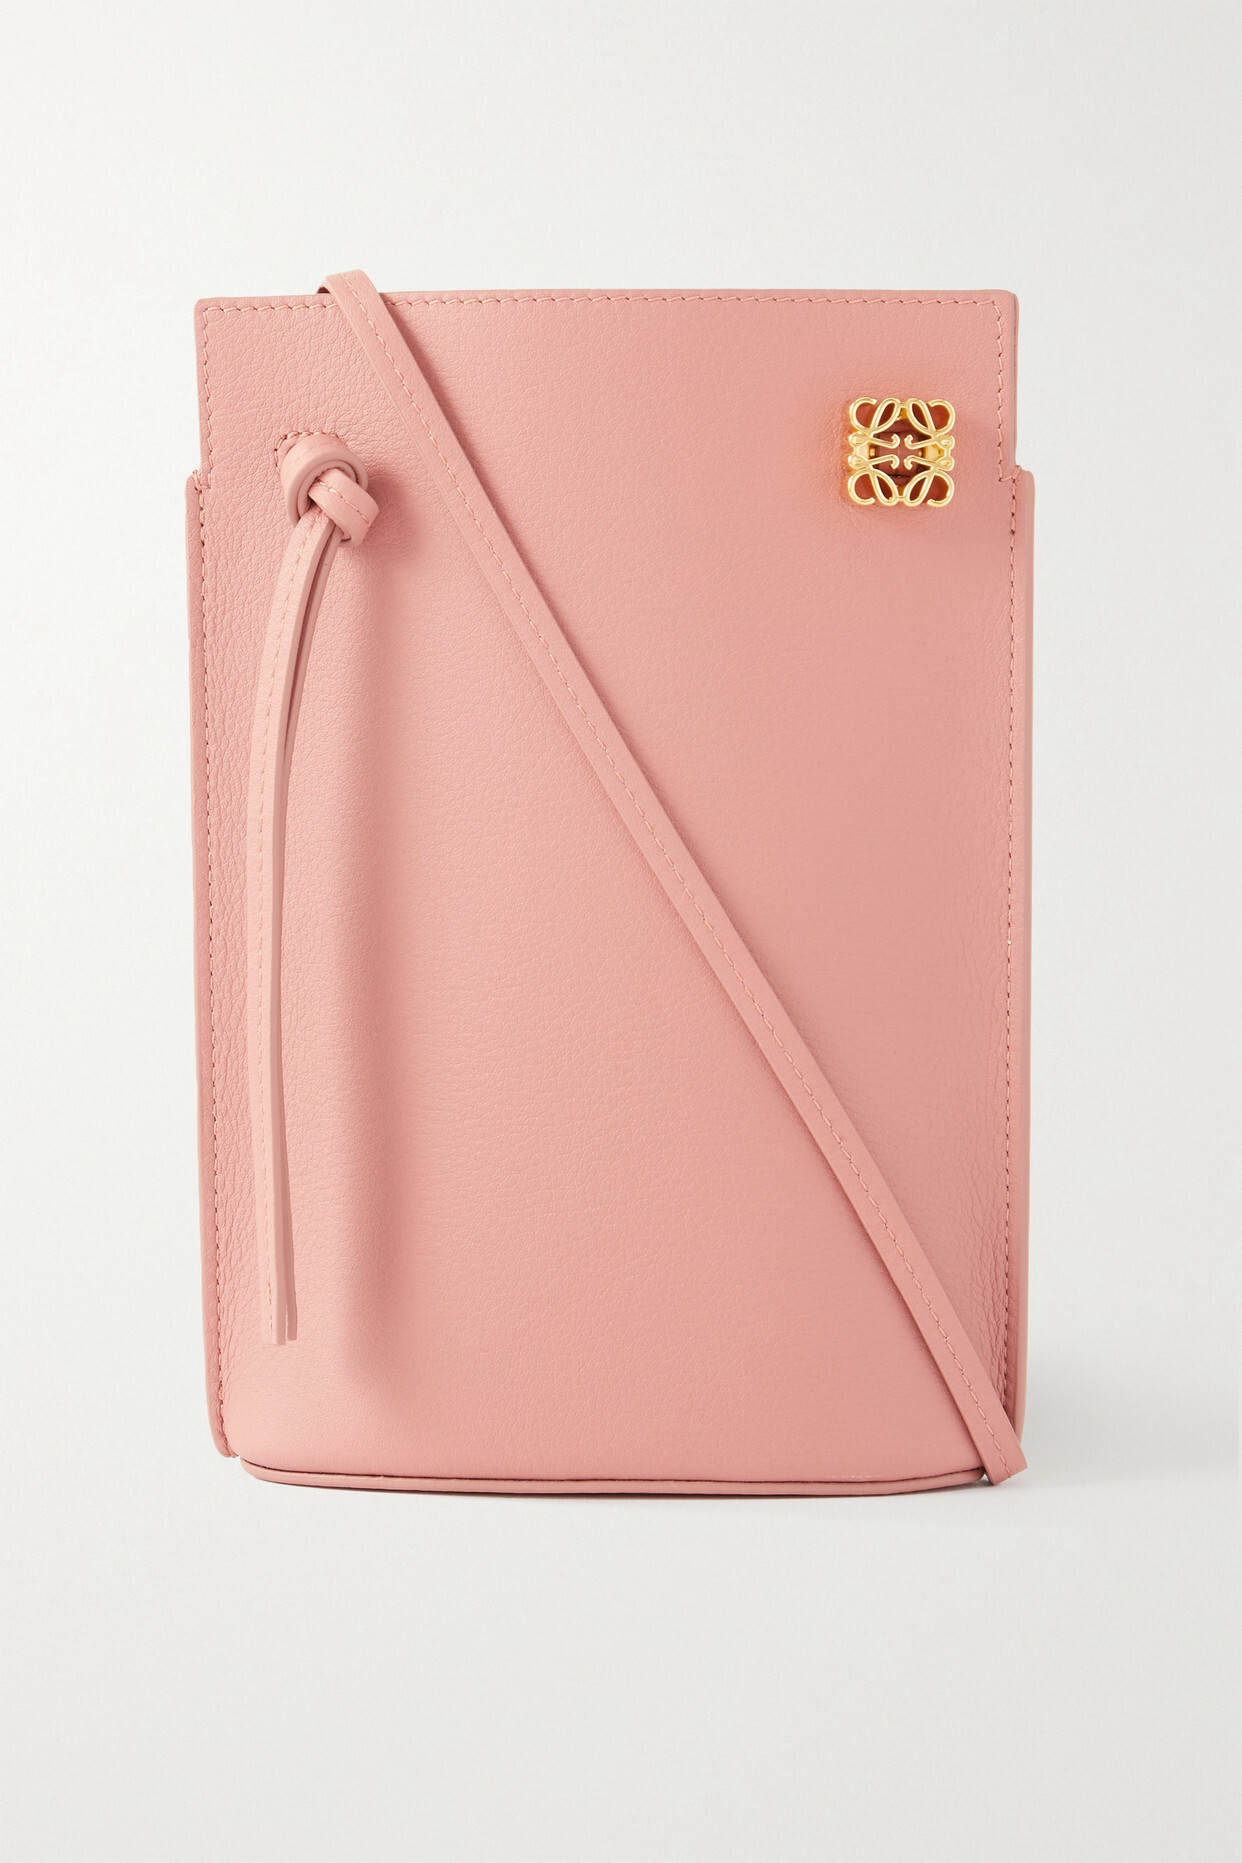 Loewe - Dice Pocket Embellished Leather Shoulder Bag - Pink